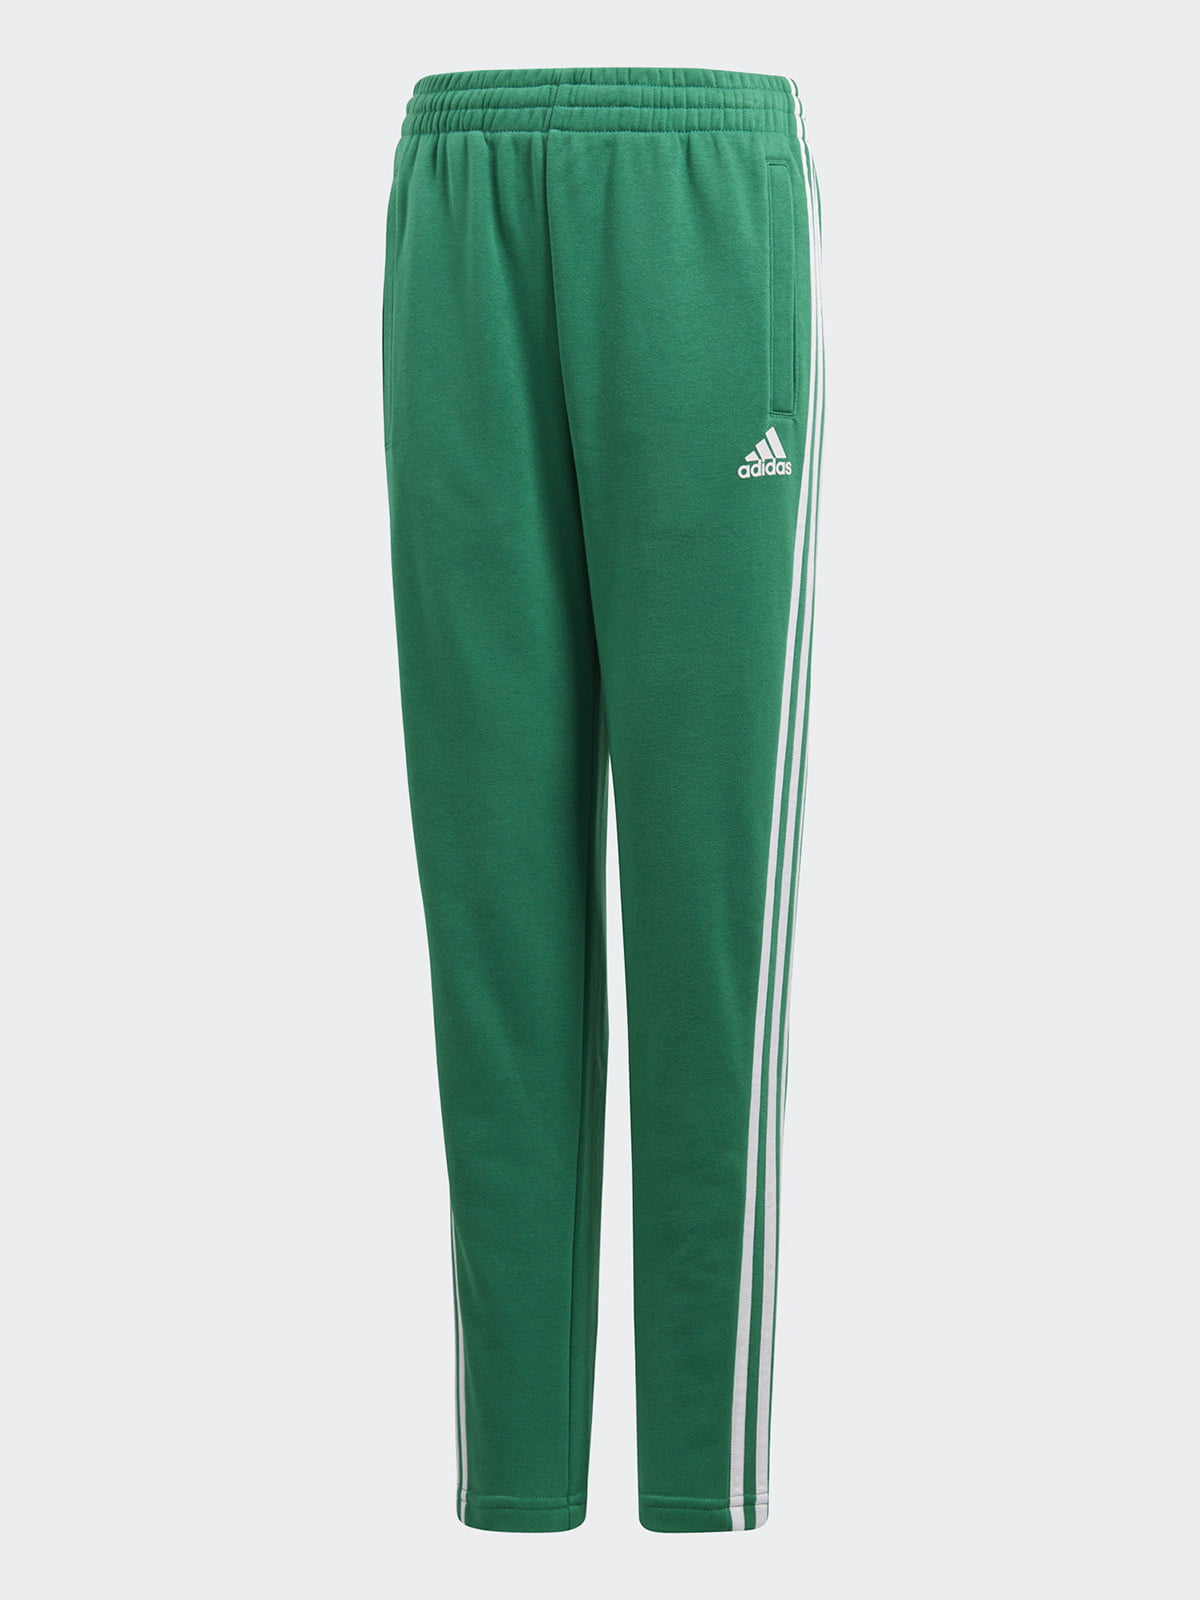 Спортивные штаны адидас зеленые мужские